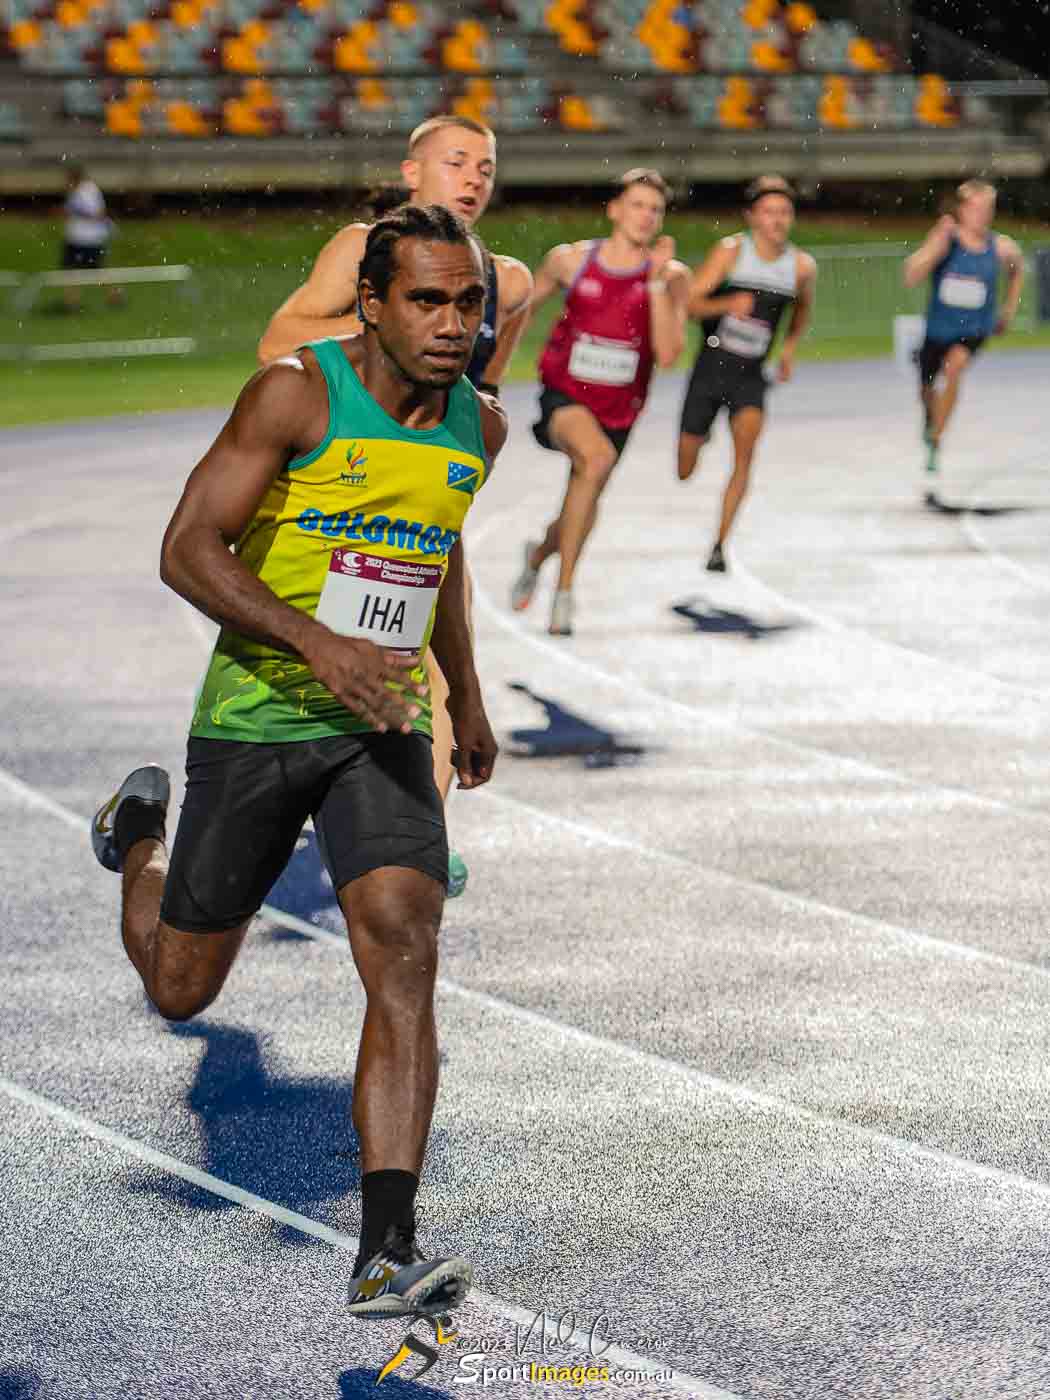 Moses Iha, Heat 2, Men Open 400m